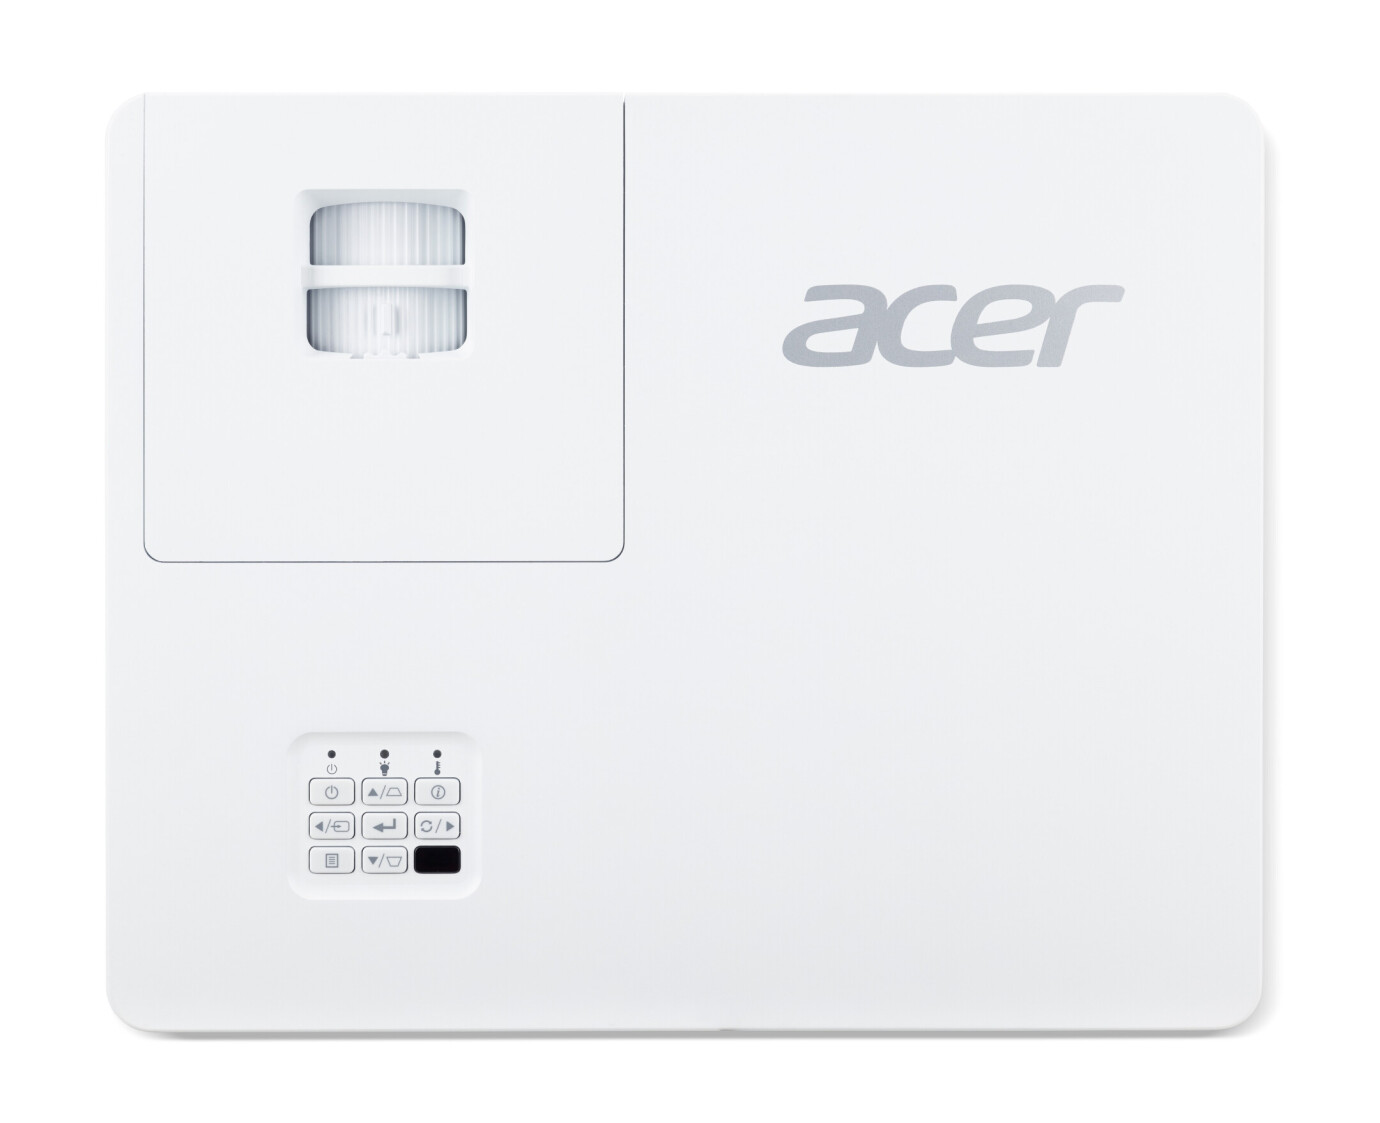 Vorschau: Acer PL6510 - Demoware Platin